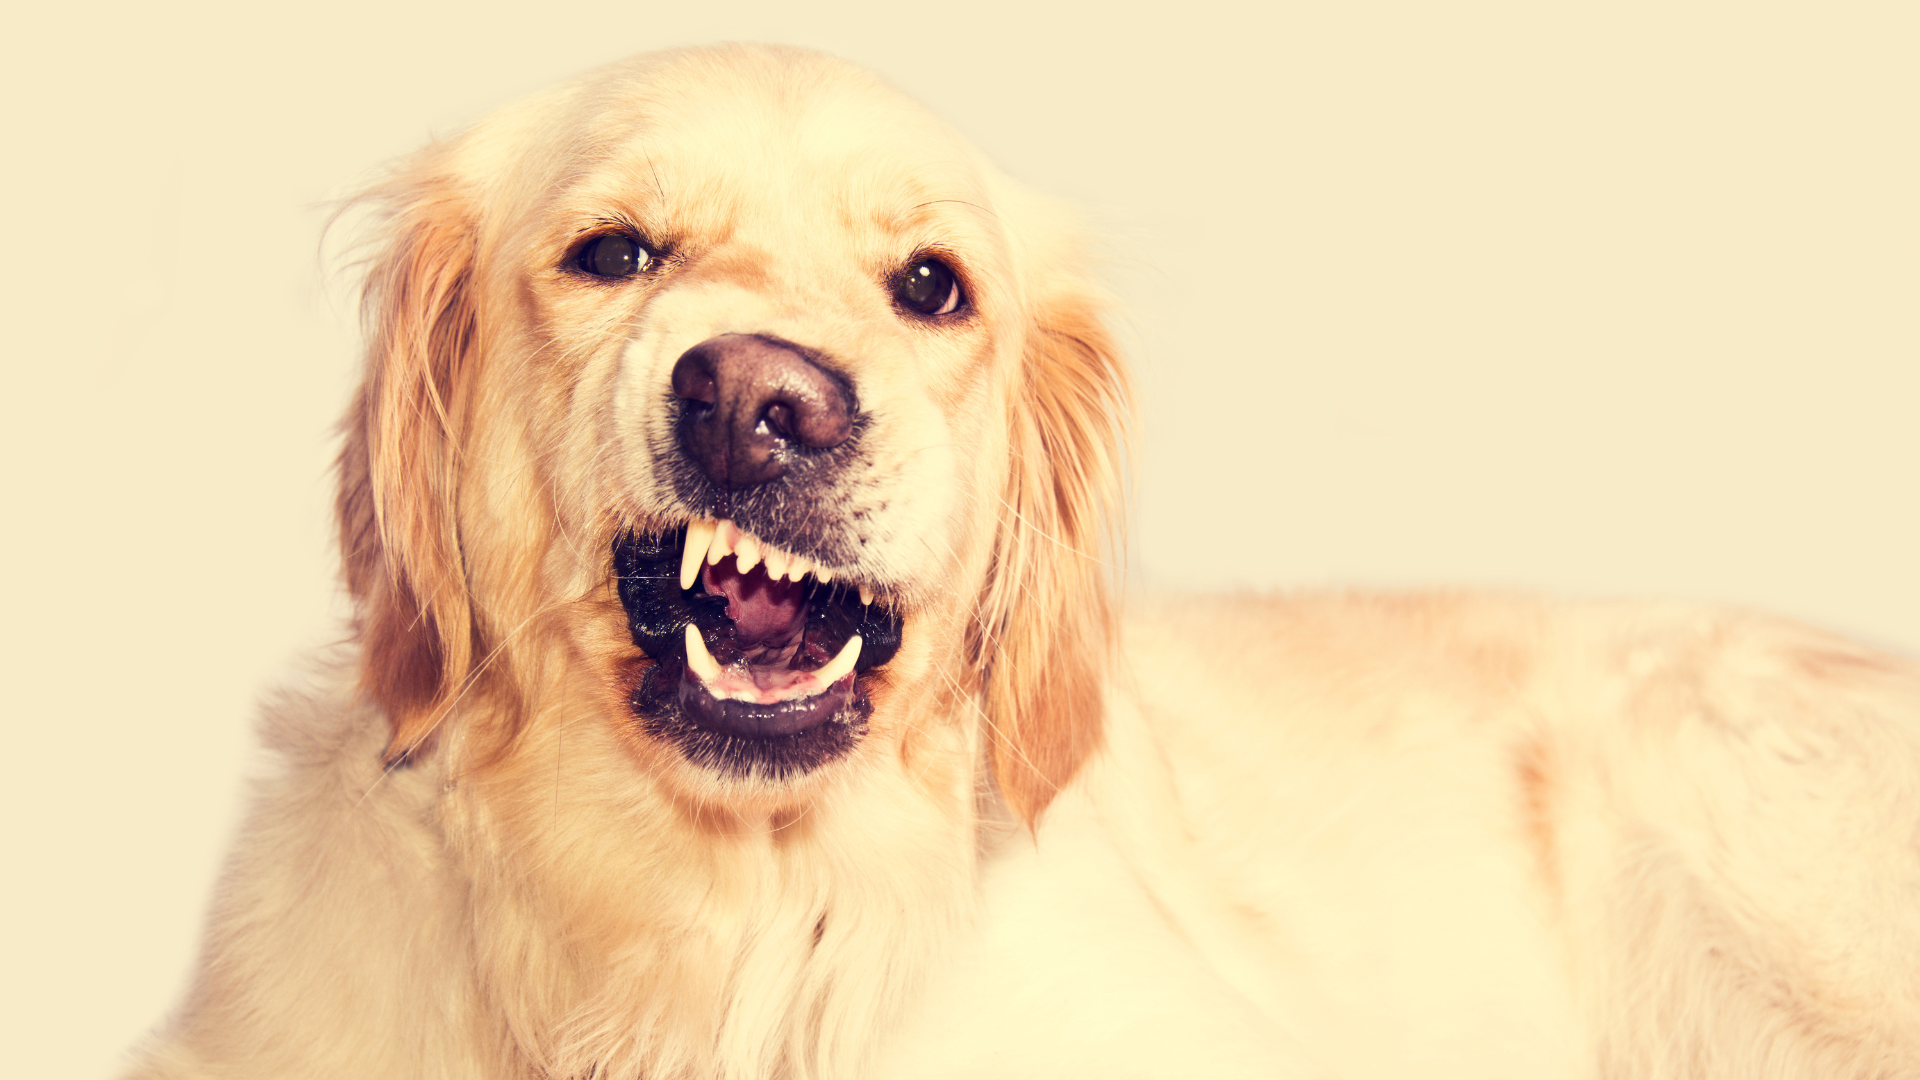 Foto de capa do artigo "Raiva canina: descubra os sintomas e se tem cura"